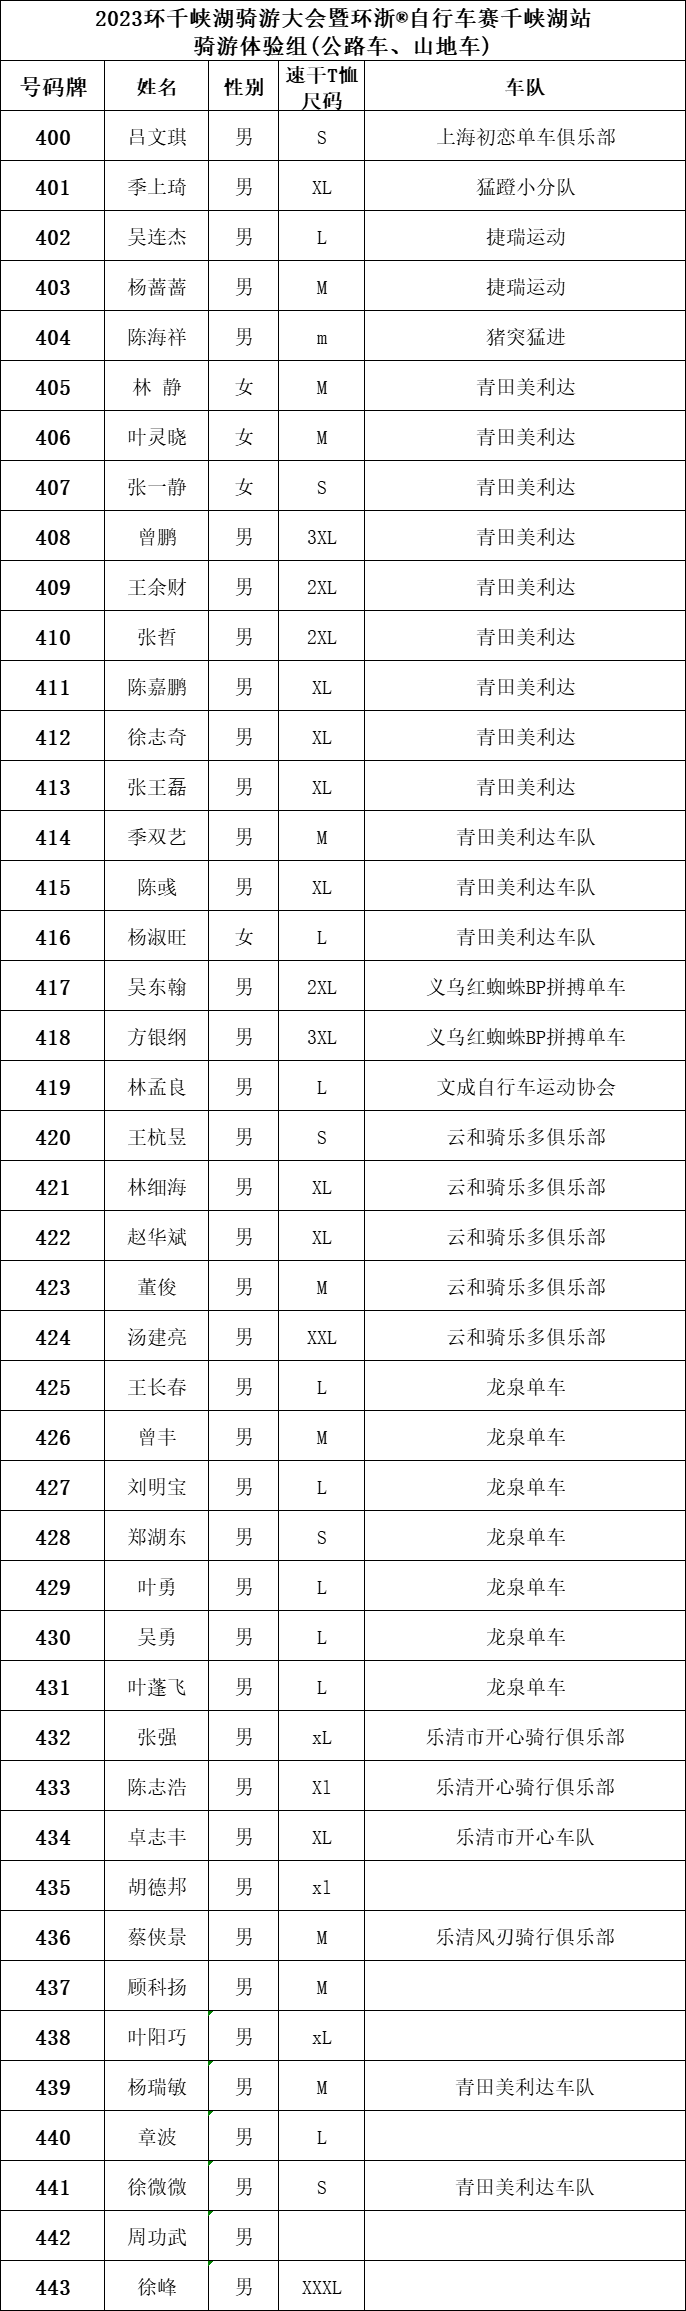 2023环千峡湖骑游大会 号码牌公布